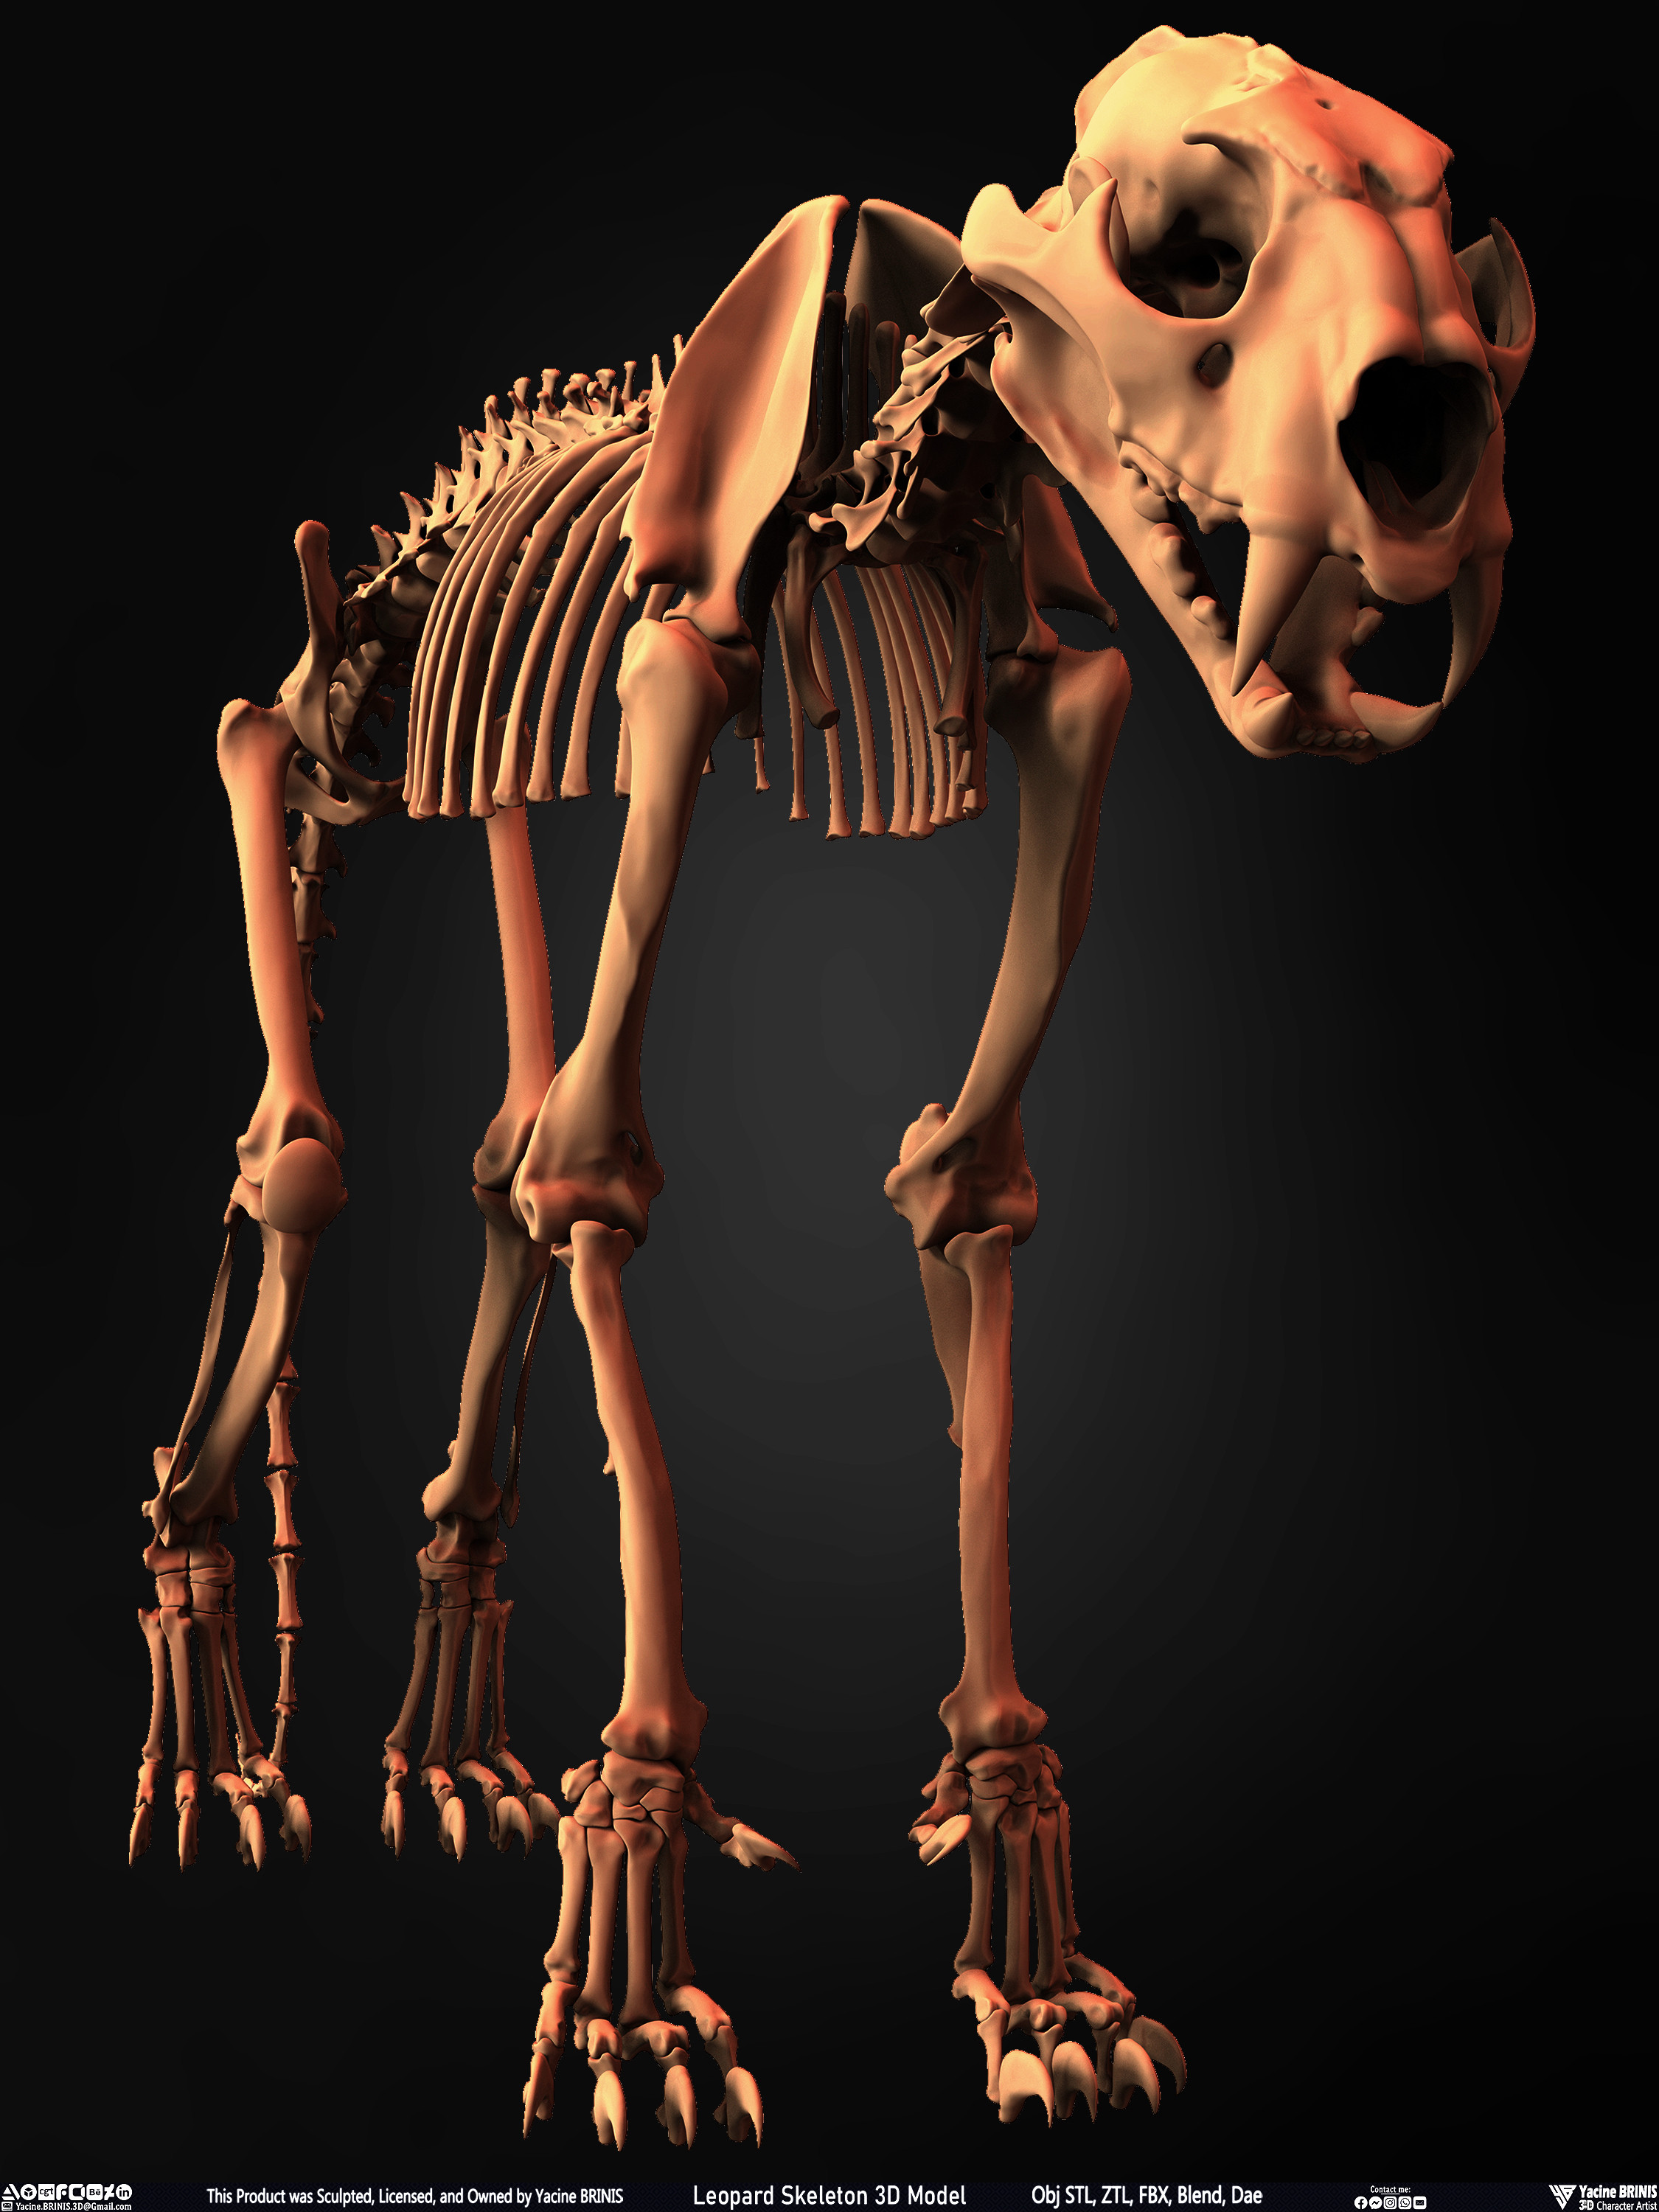 Leopard Skeleton 3D Model Sculpted By Yacine BRINIS 003